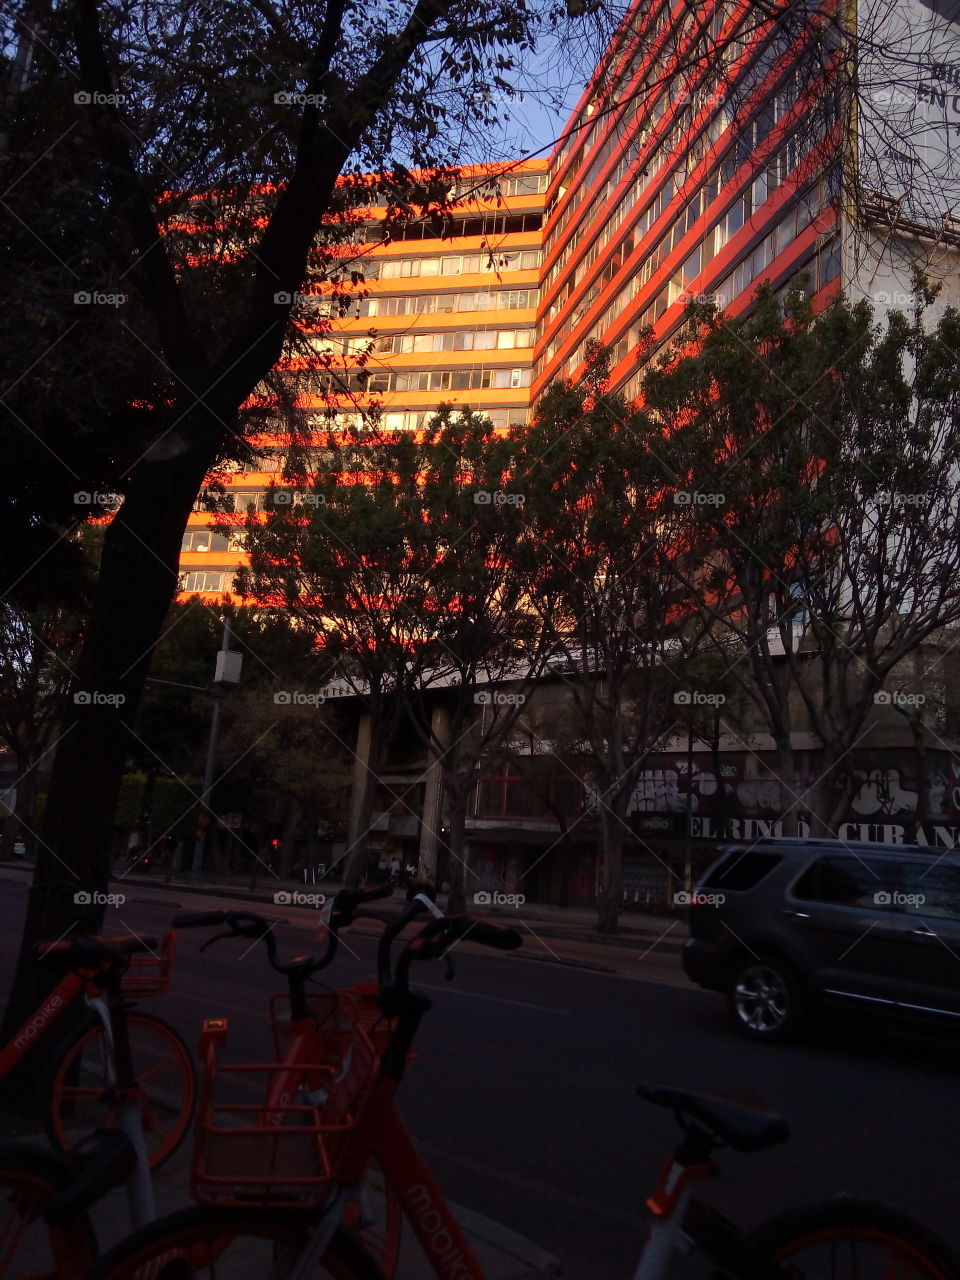 Edificio entre árboles color naranja, con reflejo del sol, en el primer plano bicicletas color naranja también.